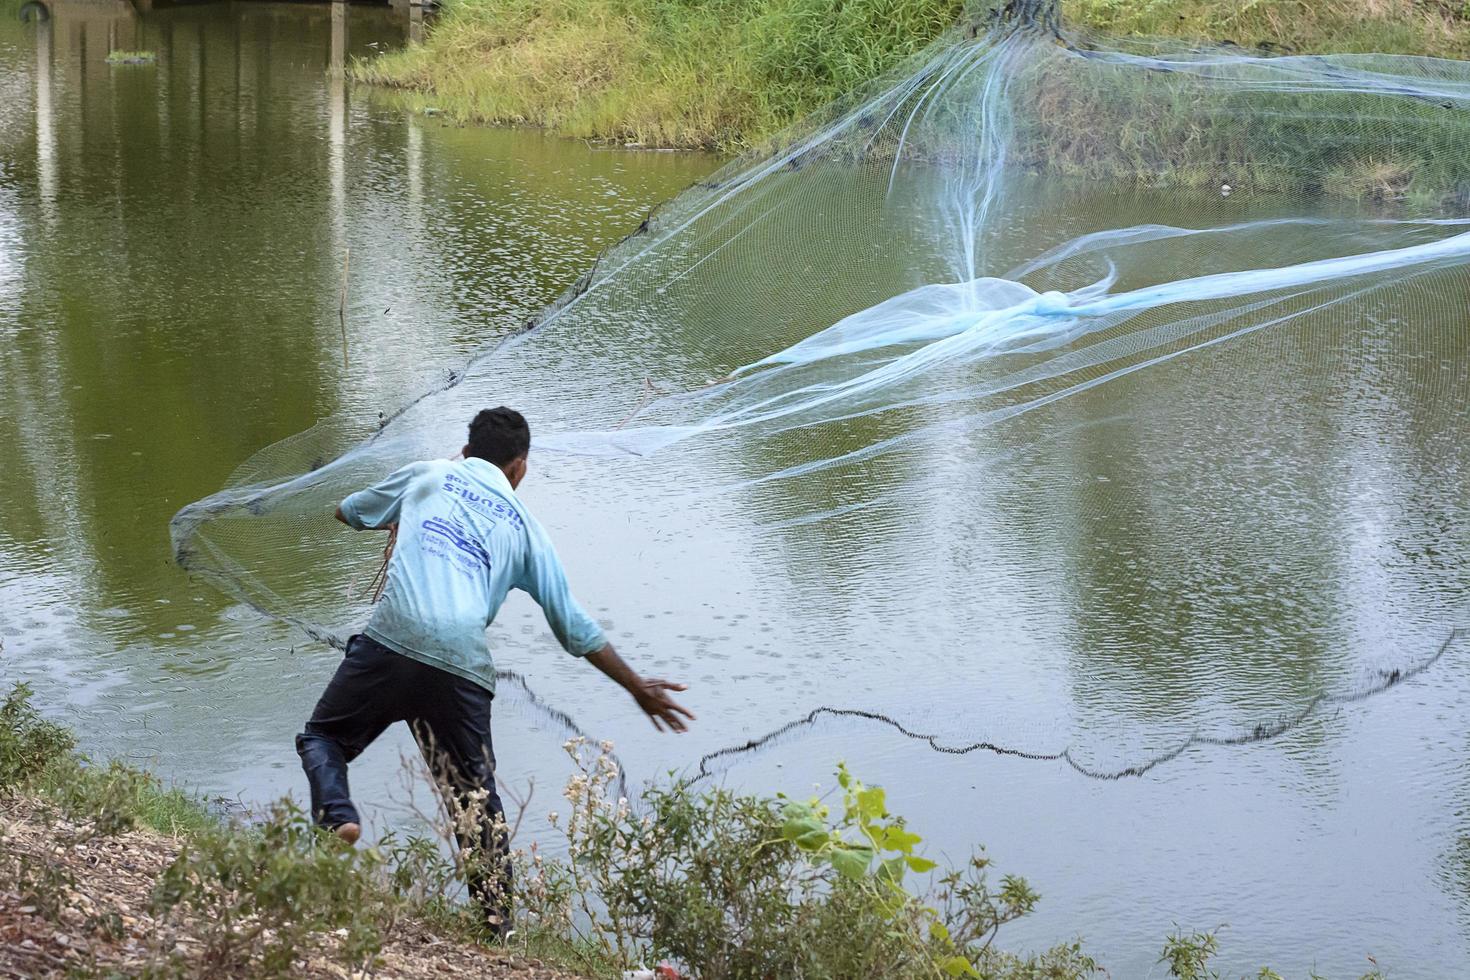 chaiyaphum, tailandia - 12 de abril de 2015 - pescador o pescador es alguien que captura peces y otros animales de un cuerpo de agua, o recolecta mariscos. para algunas comunidades. foto